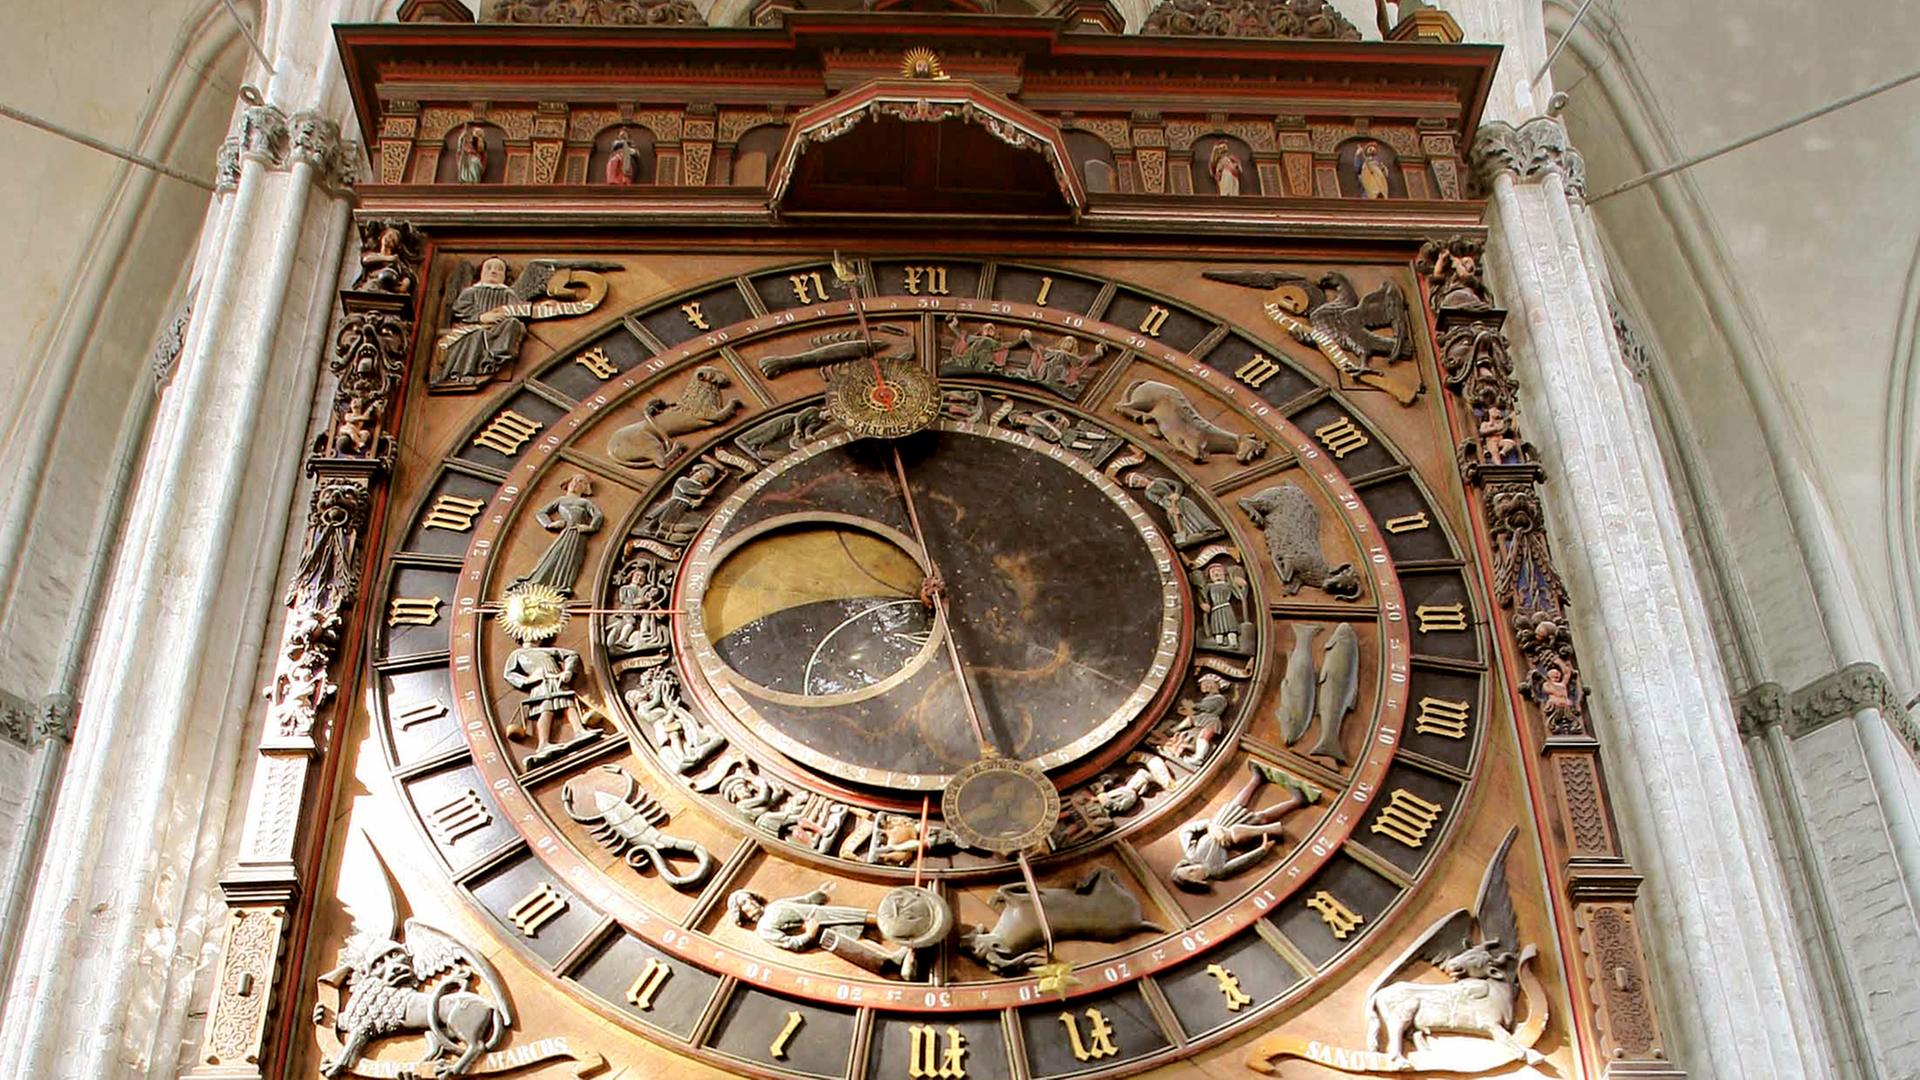 Eine alte astronomische Uhr von unten betrachtet in Großaufnahme. Zu sehen sind Holzschnitzereien, der Zeiger steht fast senkrecht.